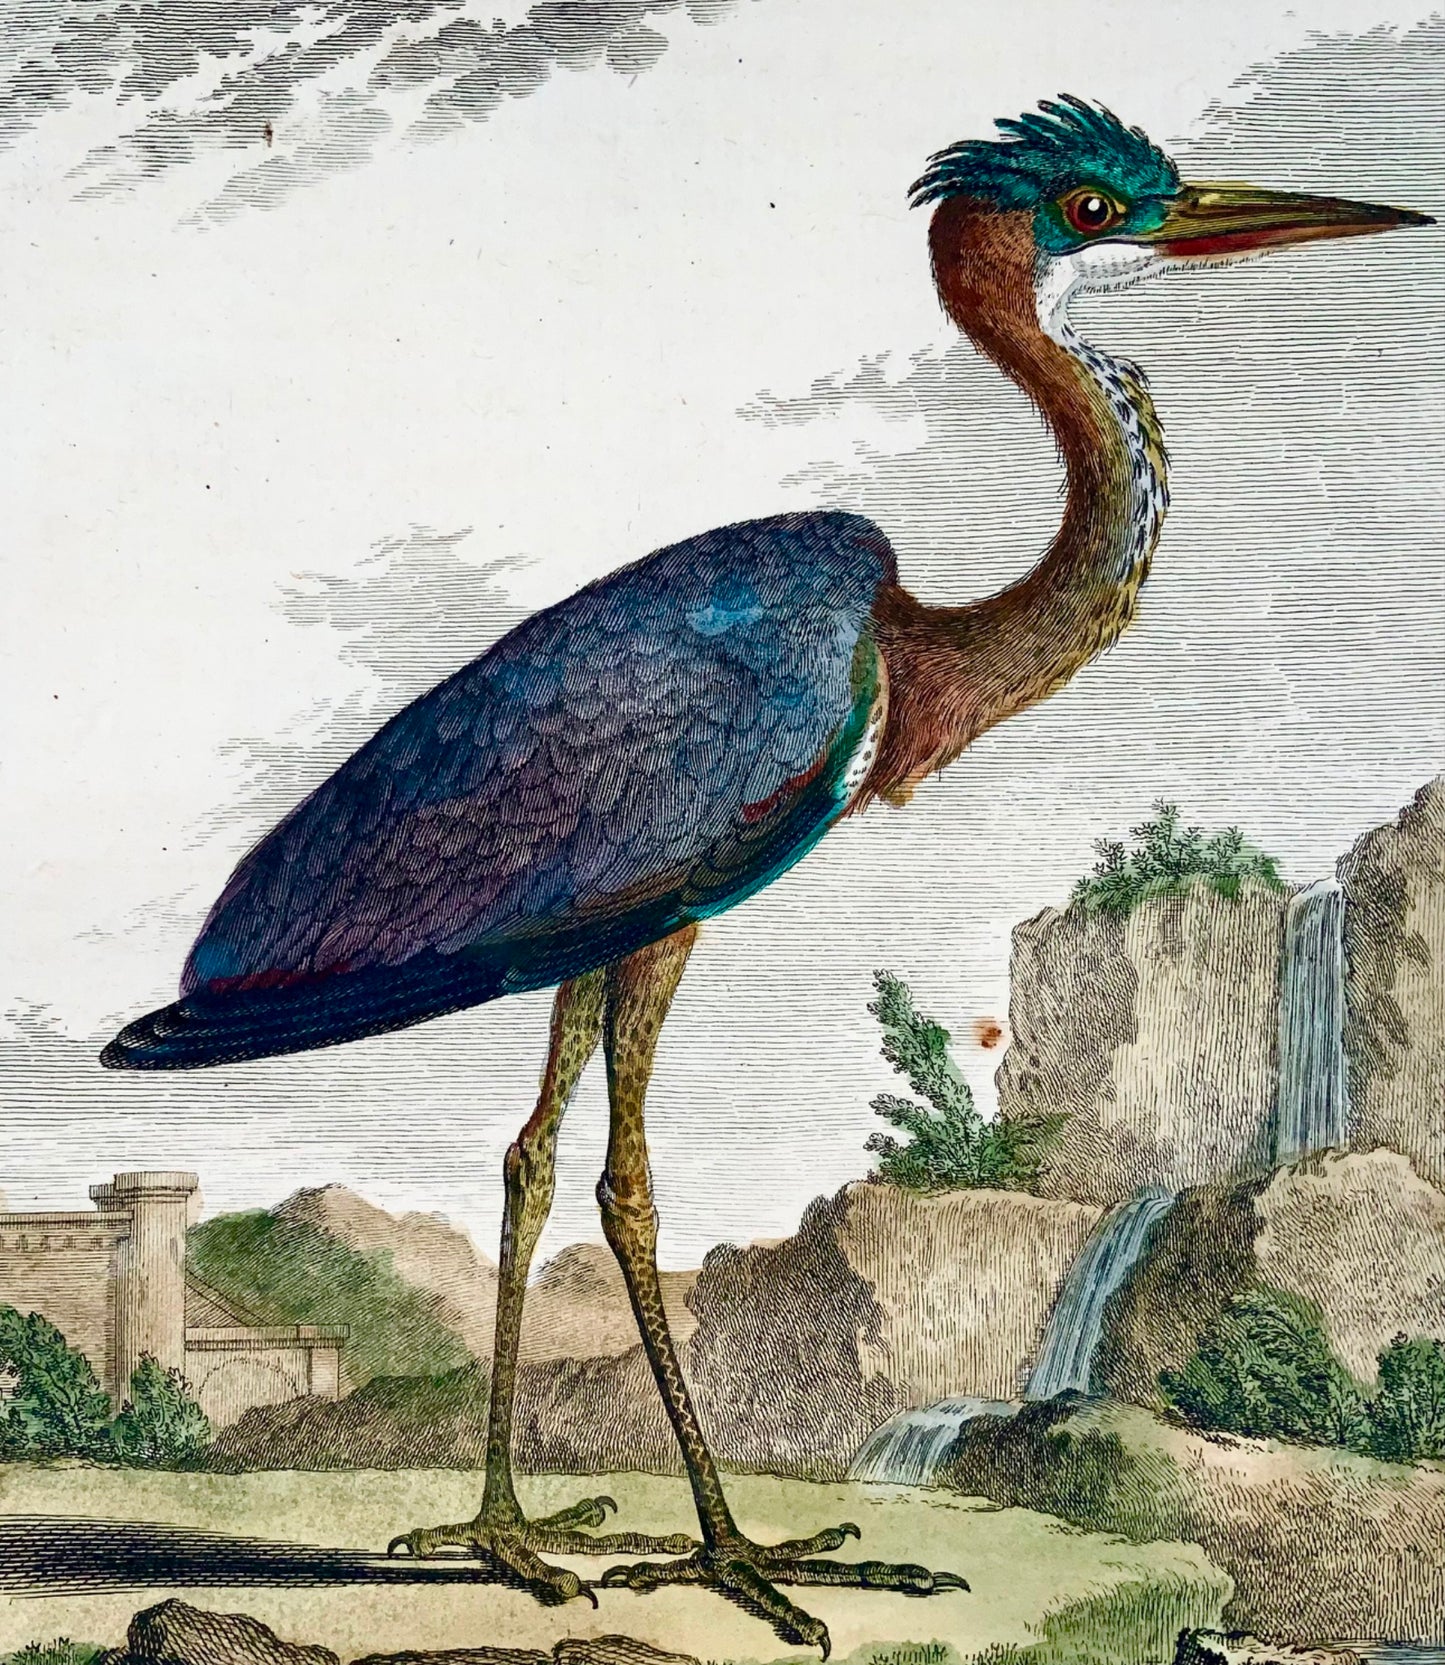 1779 Le Grand d'après de Sève, Héron, ornithologie, grande édition in-4, gravure